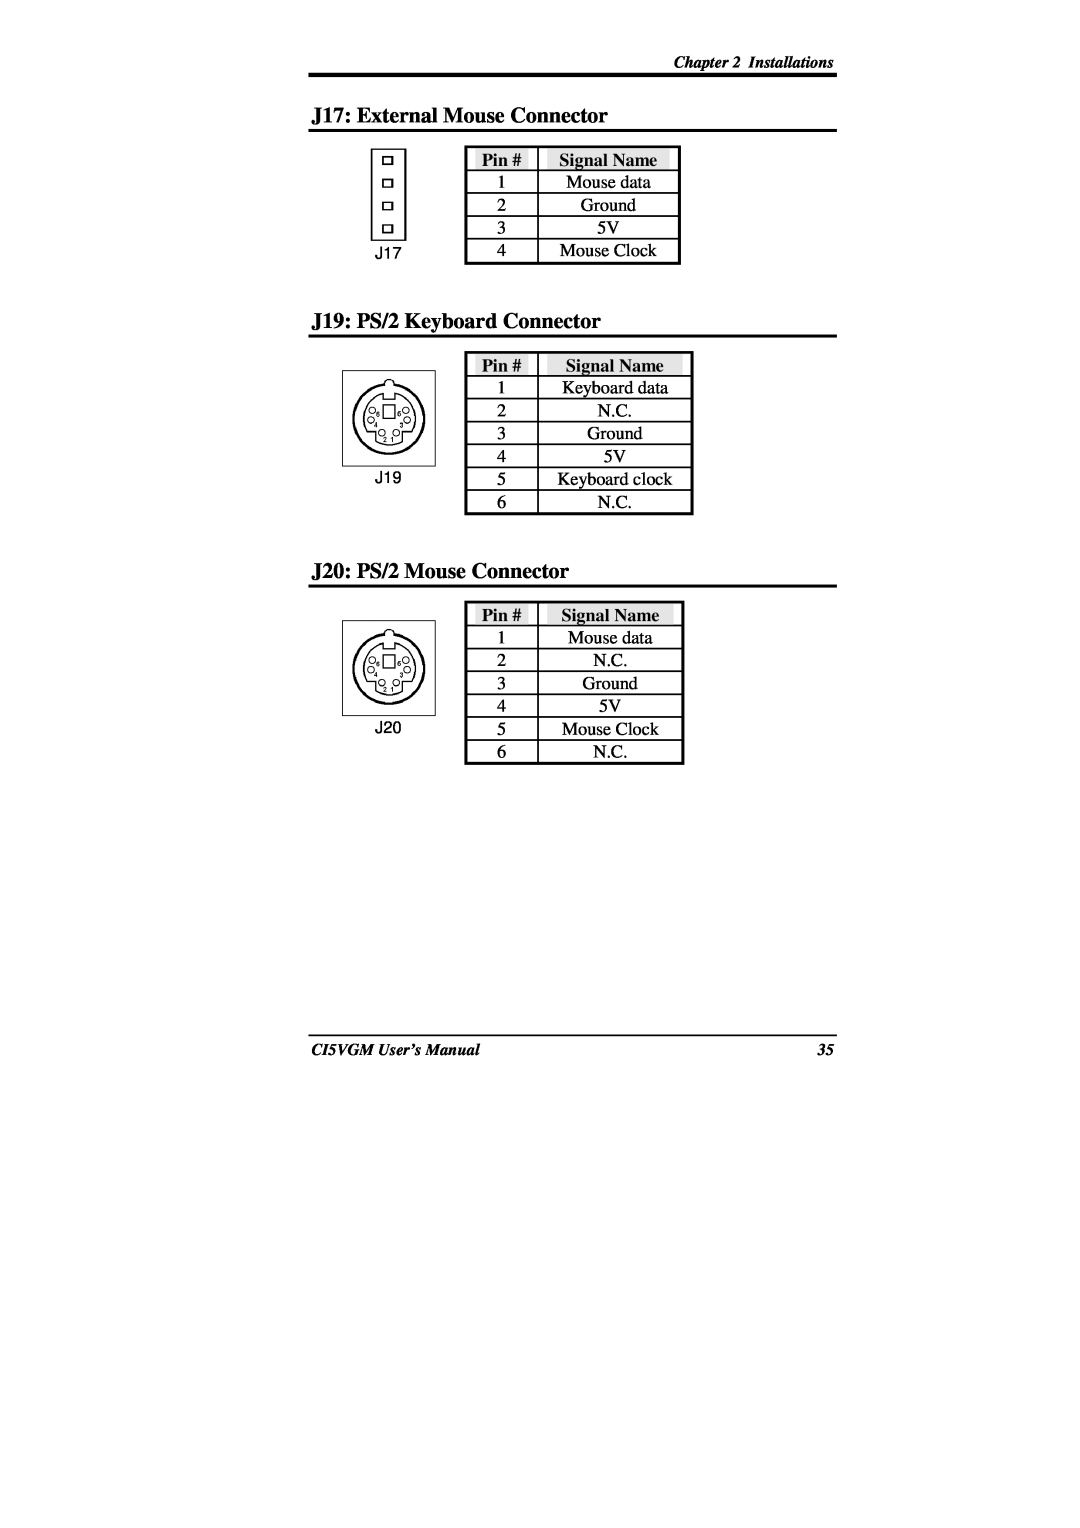 IBM CI5VGM Series user manual Pin #, Signal Name 